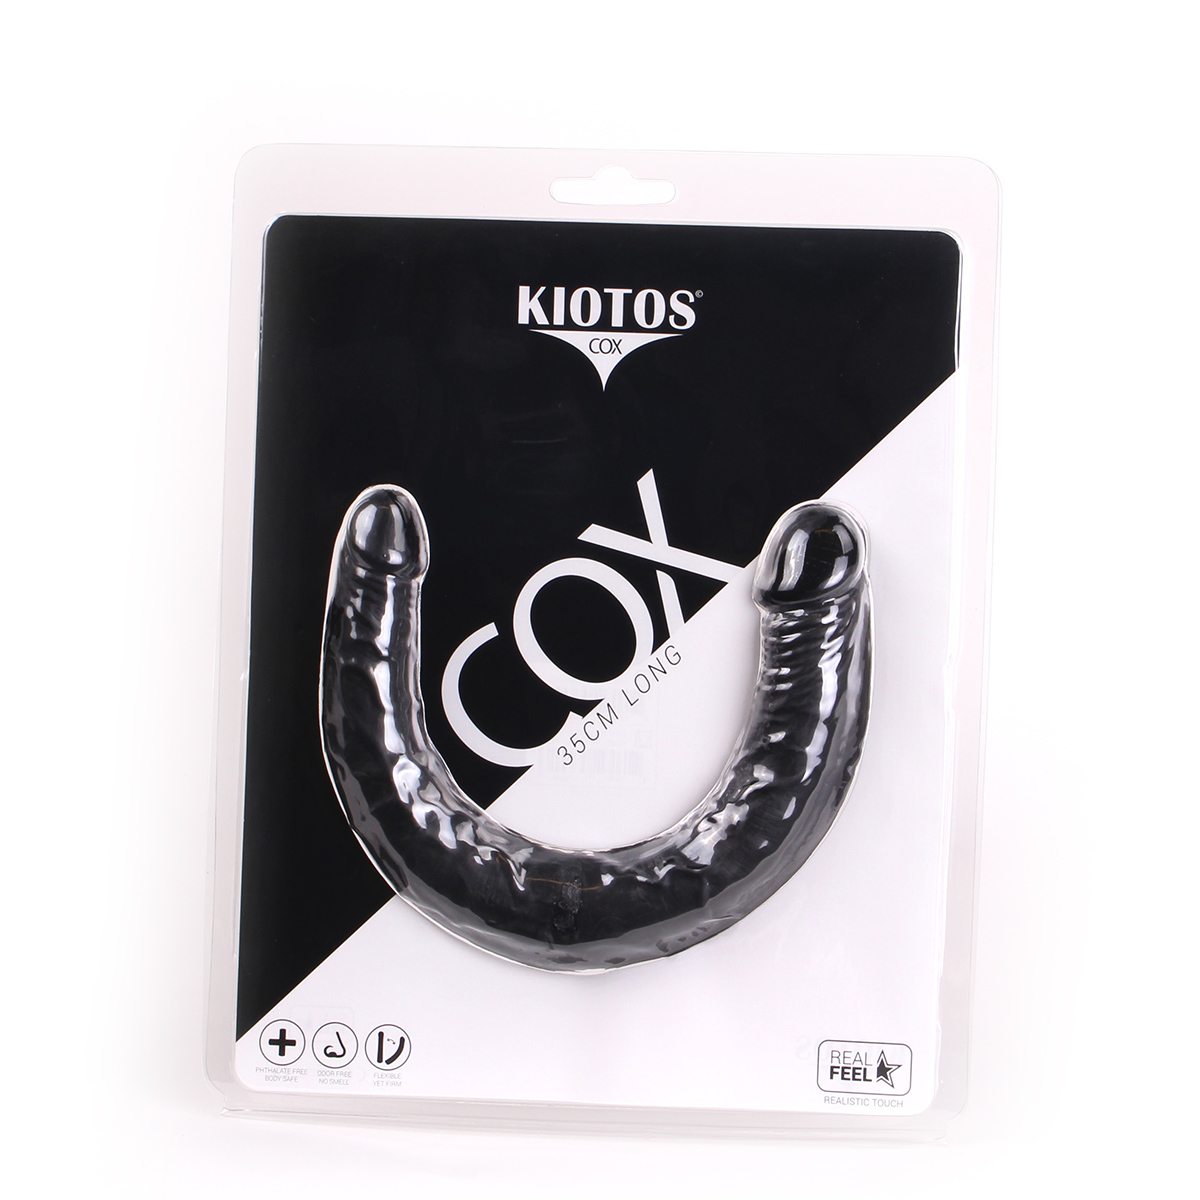 Kiotos-COX-Black-025-OPR-3070050-2